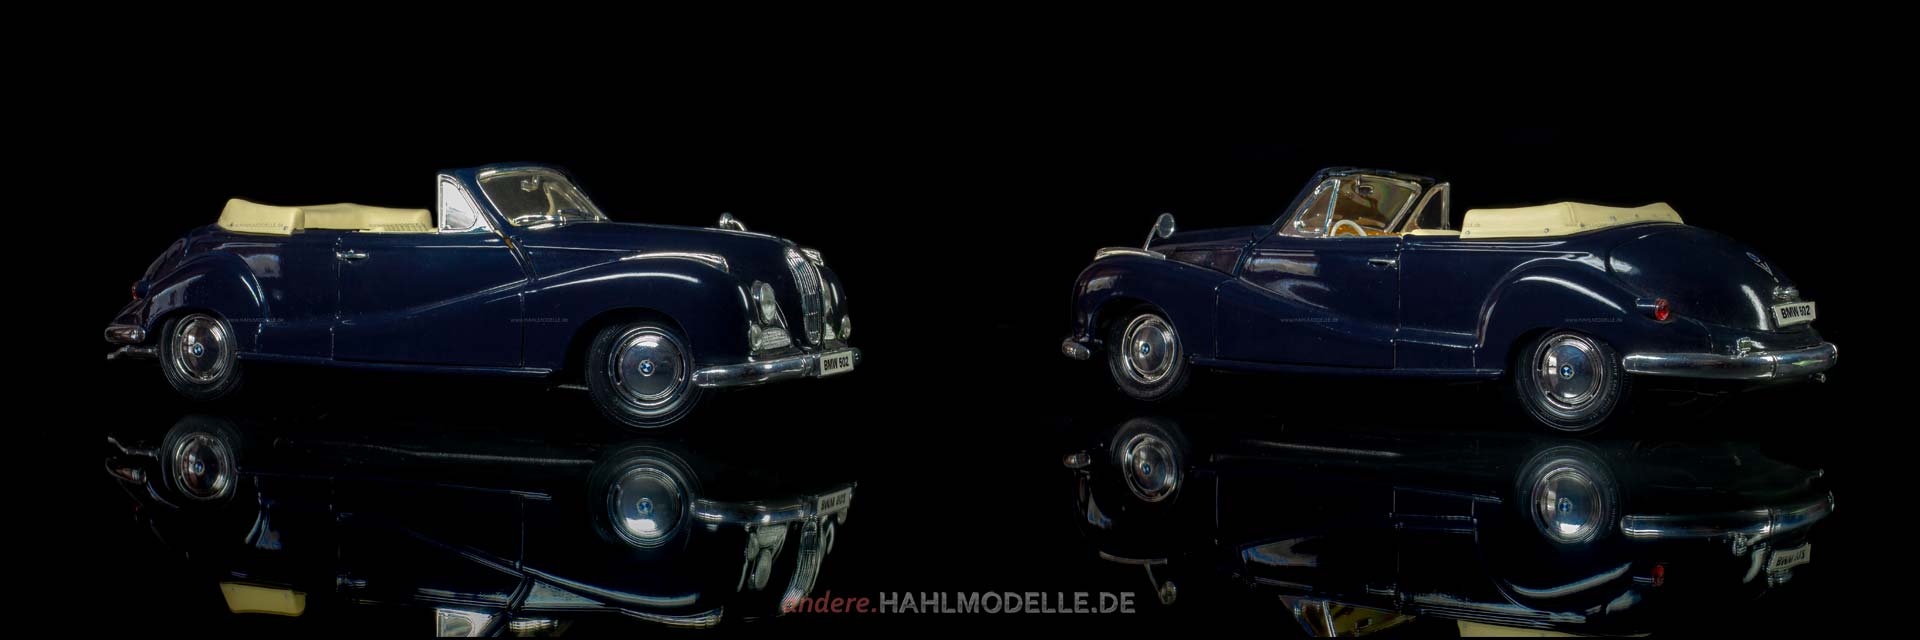 BMW 502 | Cabriolet | Maisto | www.andere.hahlmodelle.de